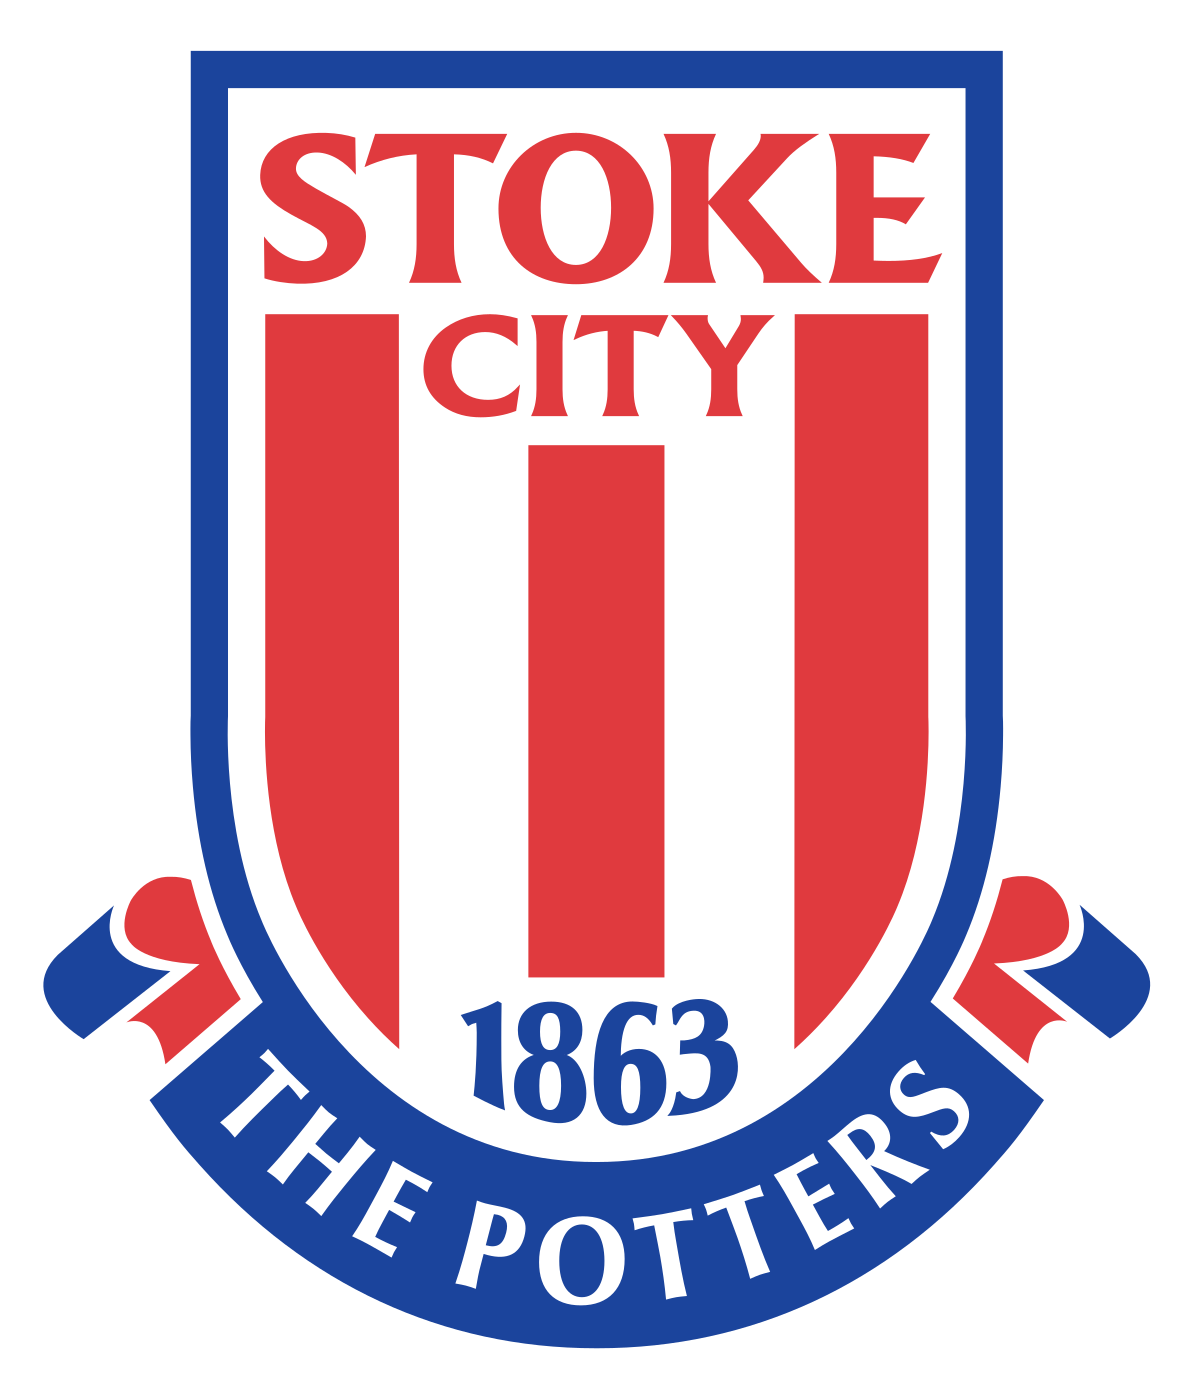 Stoke City F.C. - Wikipedia